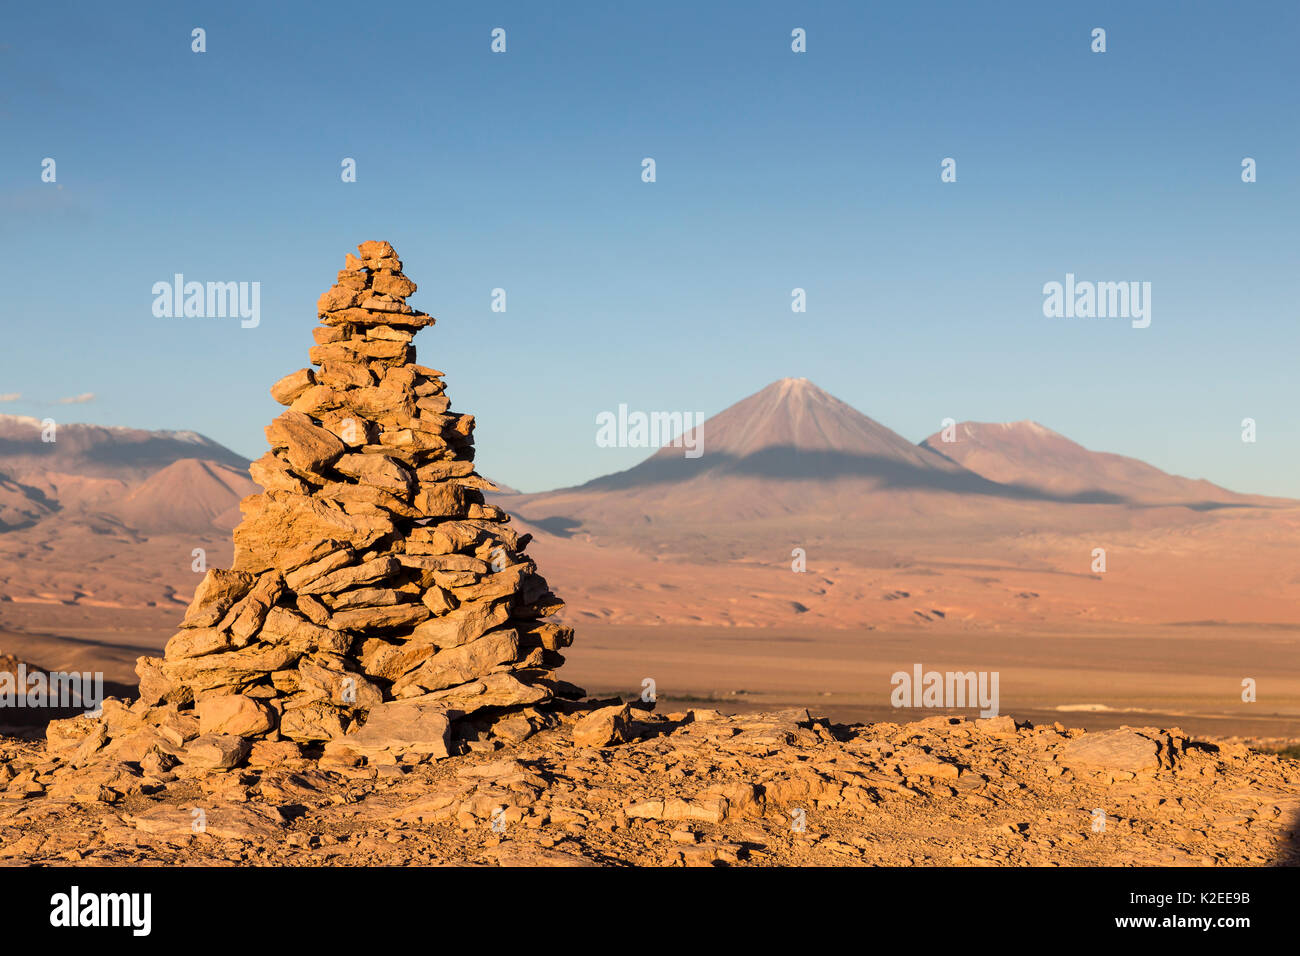 Apacheta / Apachita - una pietra cairn nelle Ande, un piccolo mucchio di pietre costruite lungo il sentiero in alta montagna con il vulcano Licancabur (5916 m sopra il livello del mare) e il vulcano Juriques all' estrema destra (5704 m) sullo sfondo, il Deserto di Atacama, San Pedro, Cile Foto Stock